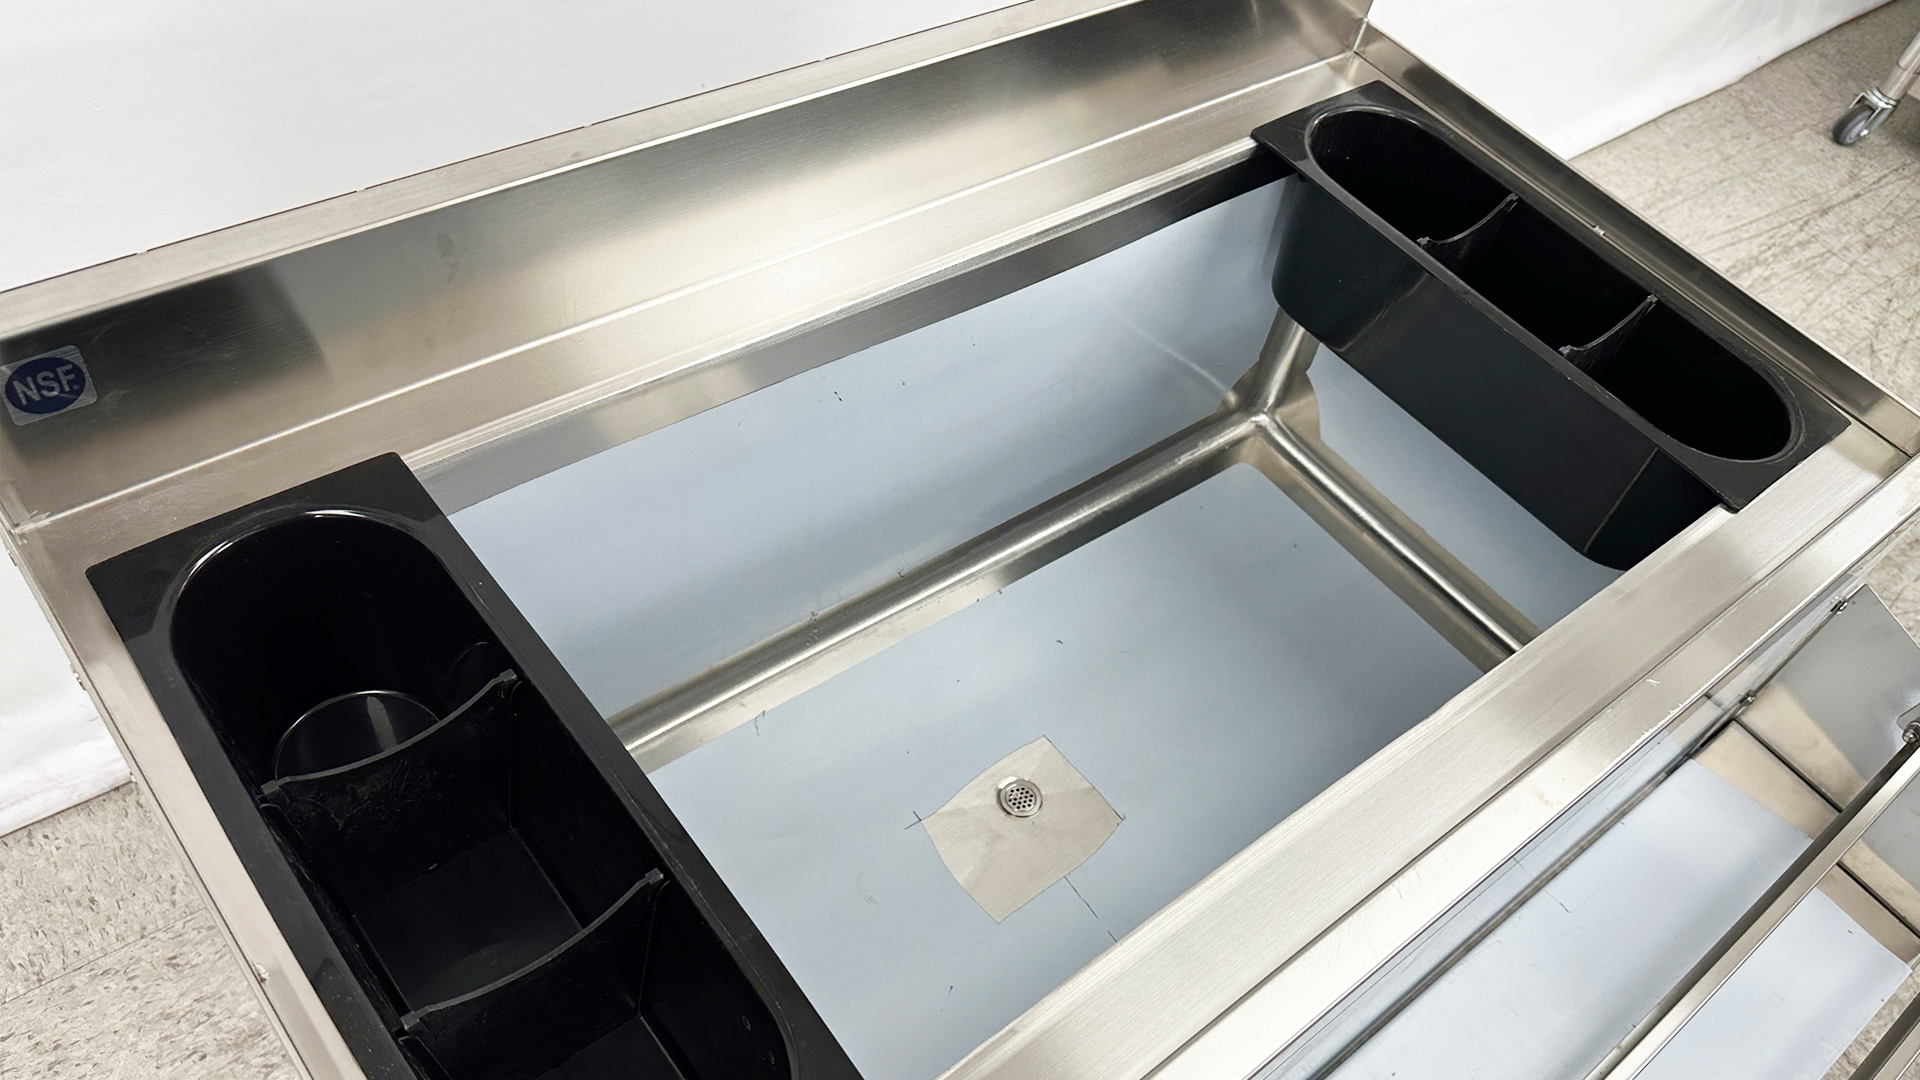 NEW 36 x 29 Commercial Ice Bin Underbar Counter Sink w/ Bottle